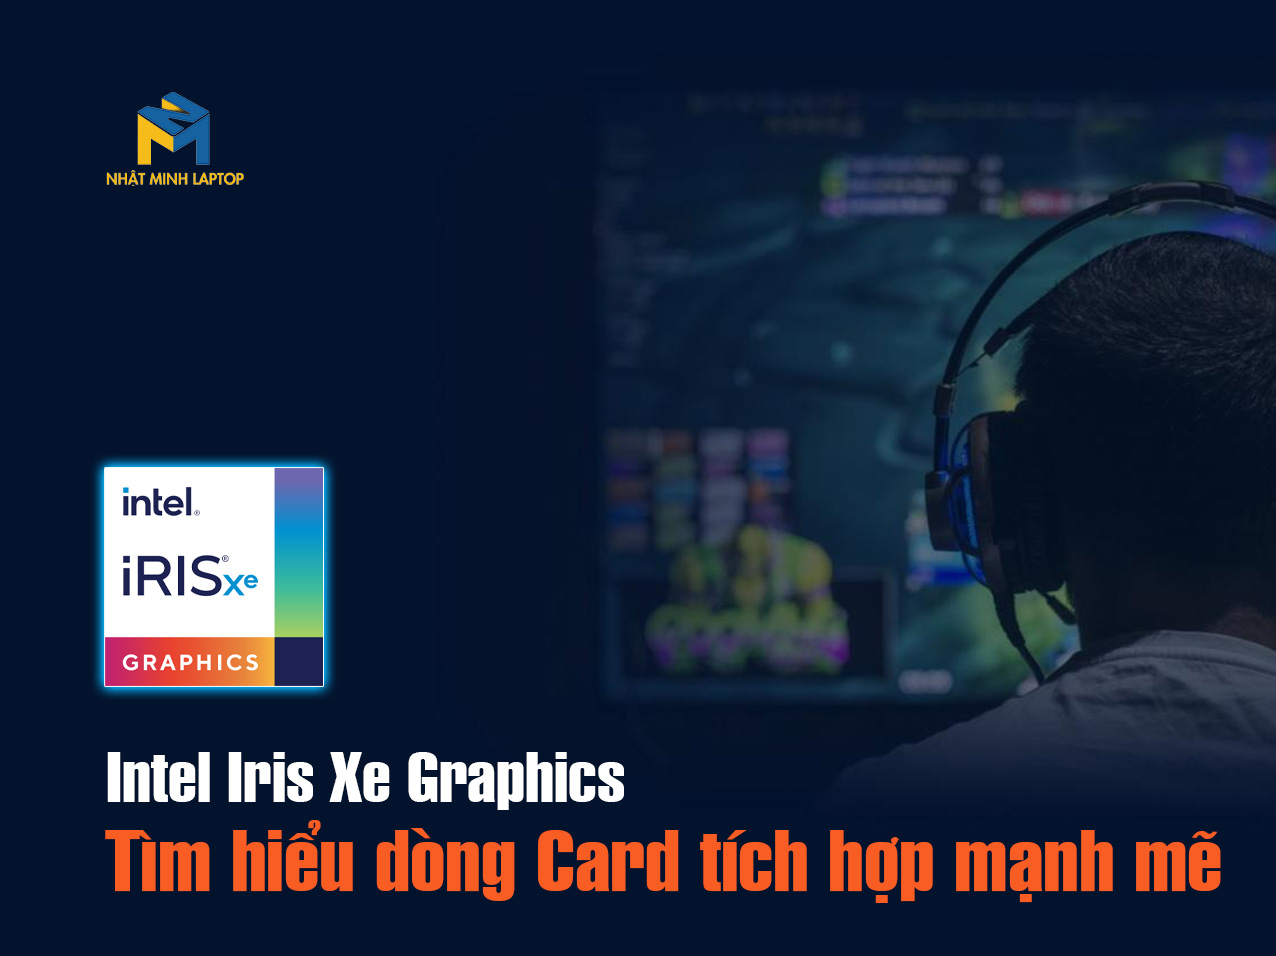 Tìm hiểu dòng Card tích hợp Intel Iris Xe Graphics mạnh mẽ